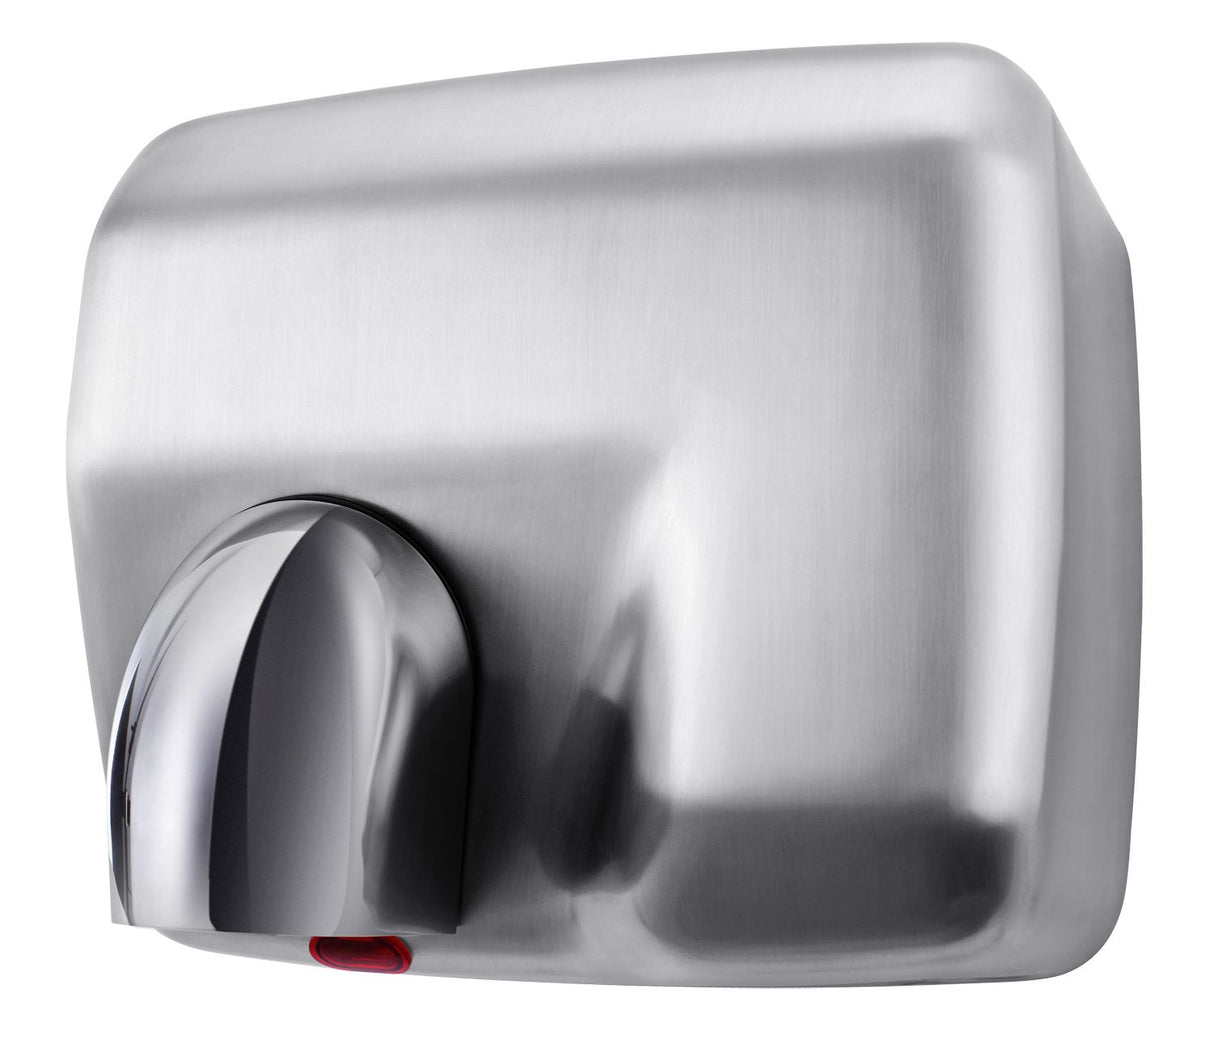 Combisteel Hand Dryer HD-04 - 7270.0015 Hand Dryers Combisteel   